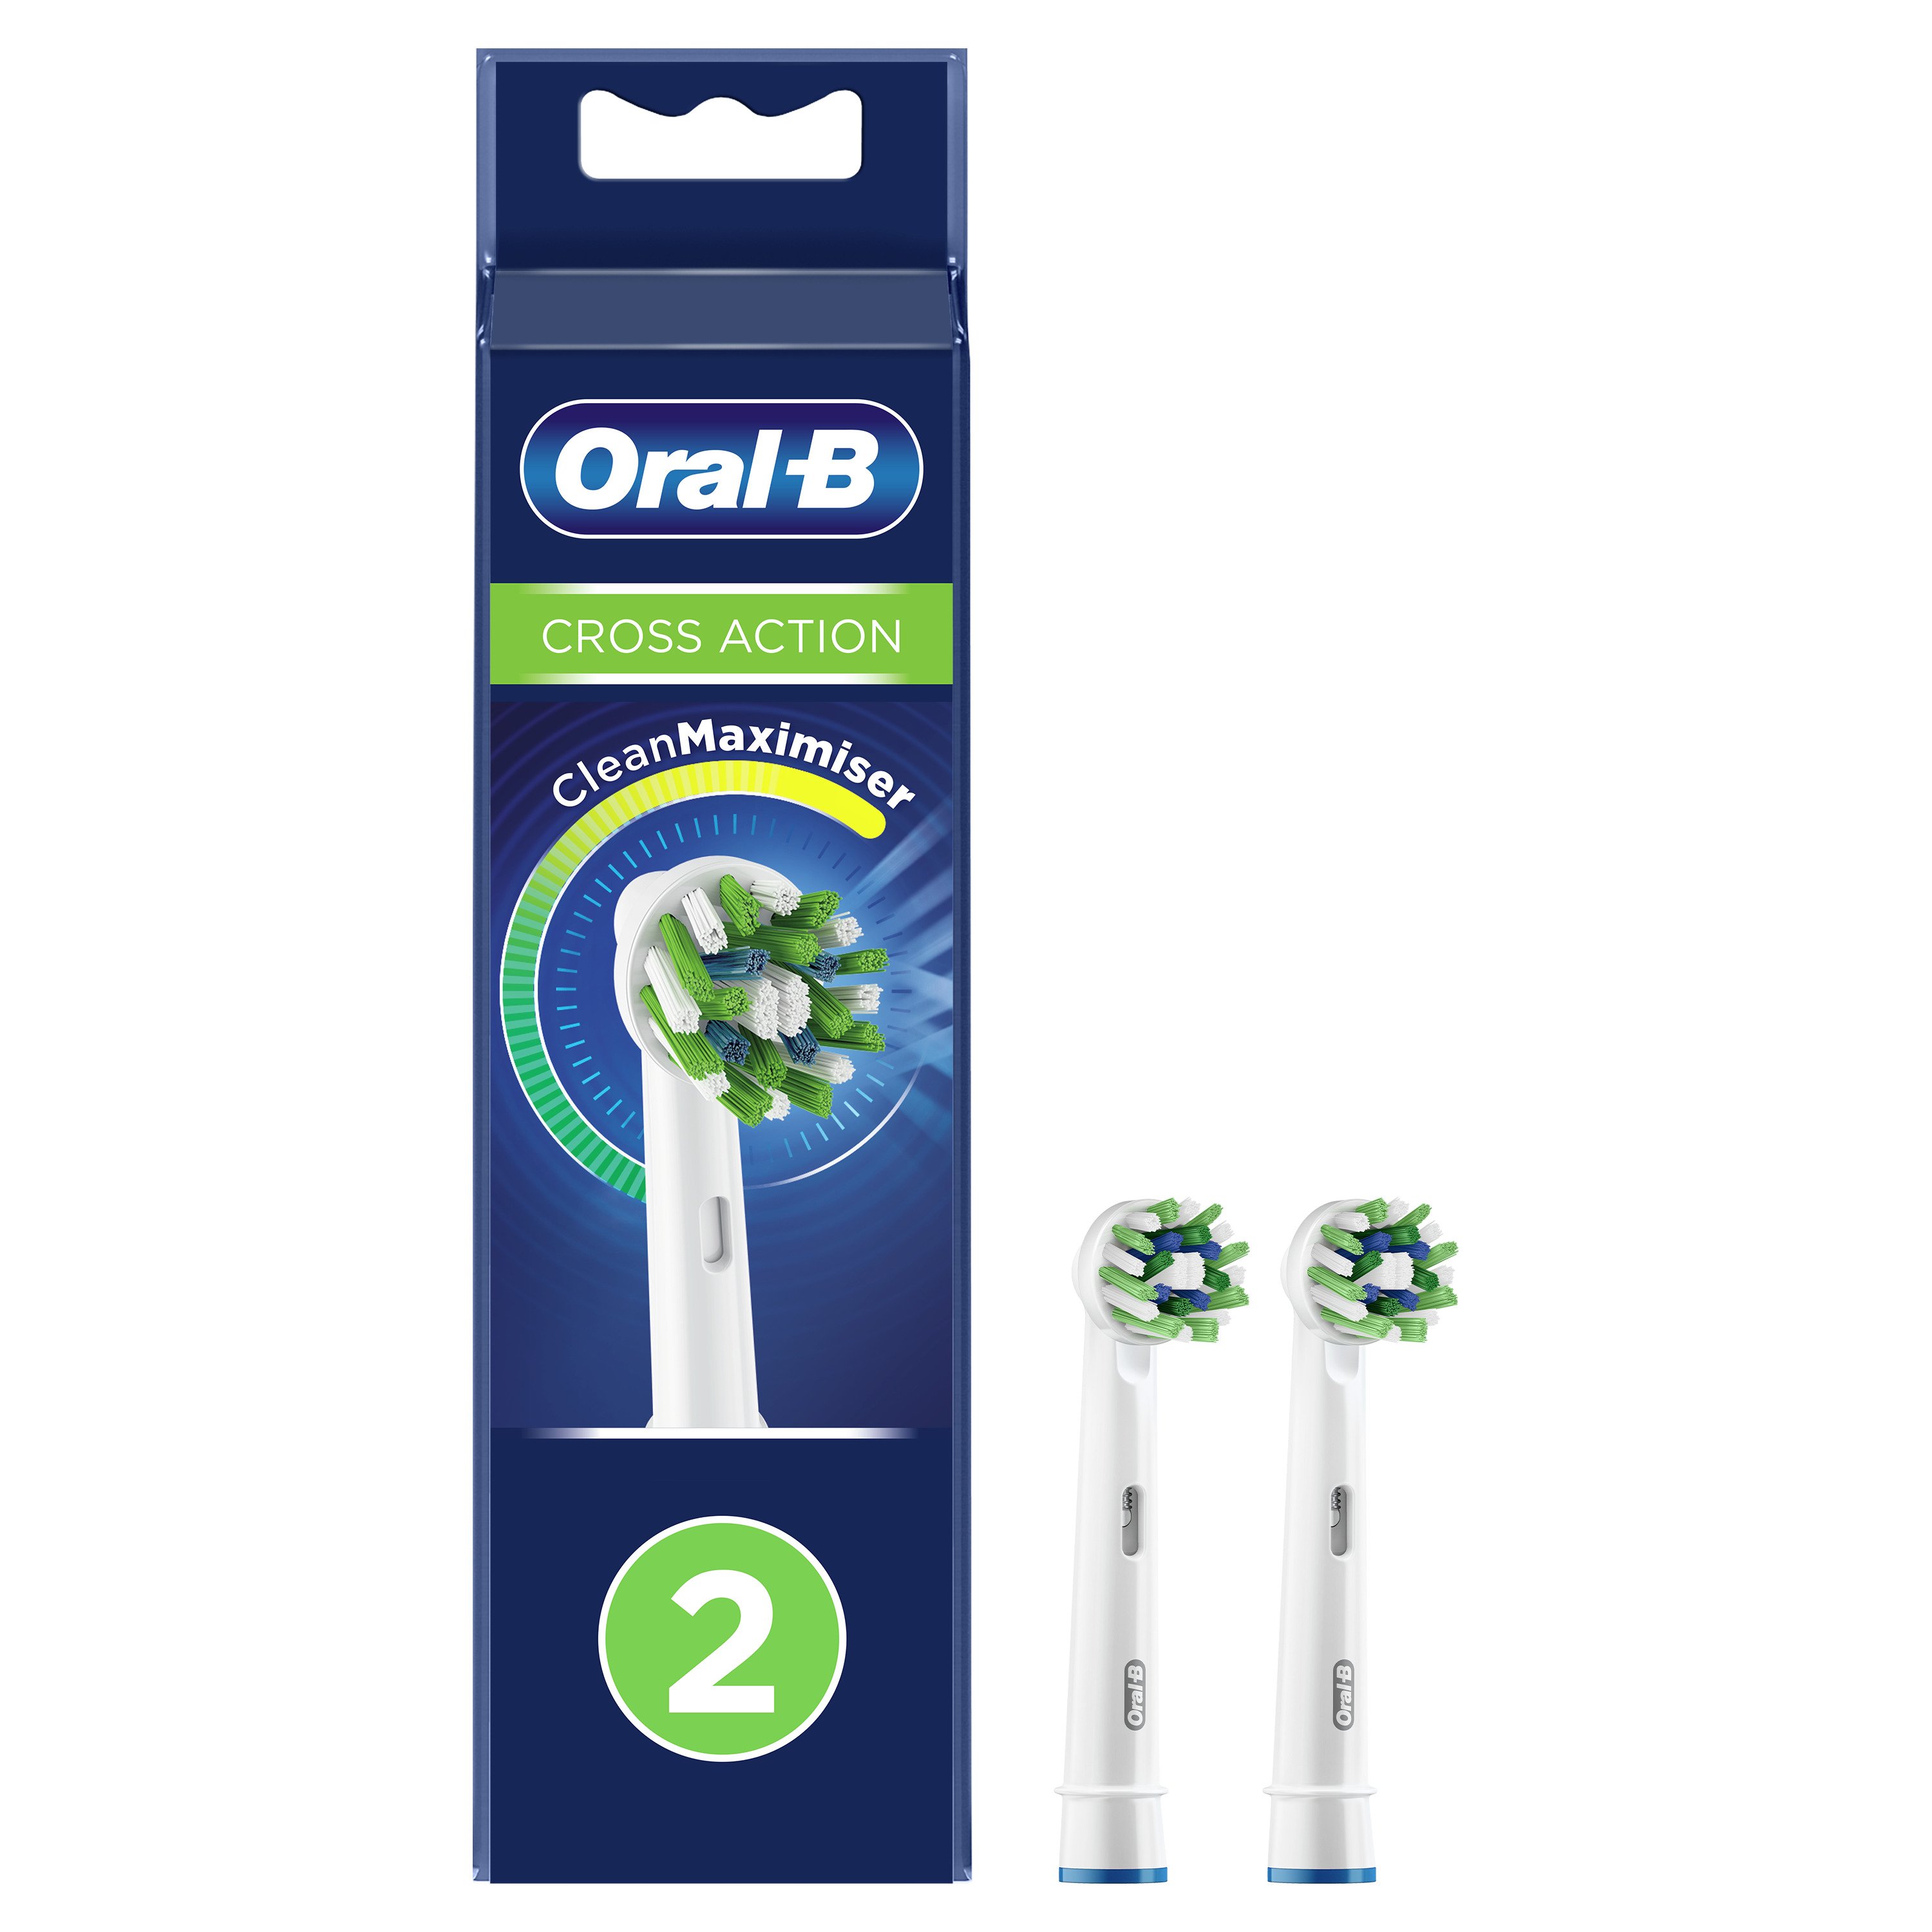 Насадка для электрической зубной щетки Braun Oral-B EB50RB-2 Cross Action насадка для электрической зубной щетки oral b cross action clean maximiser